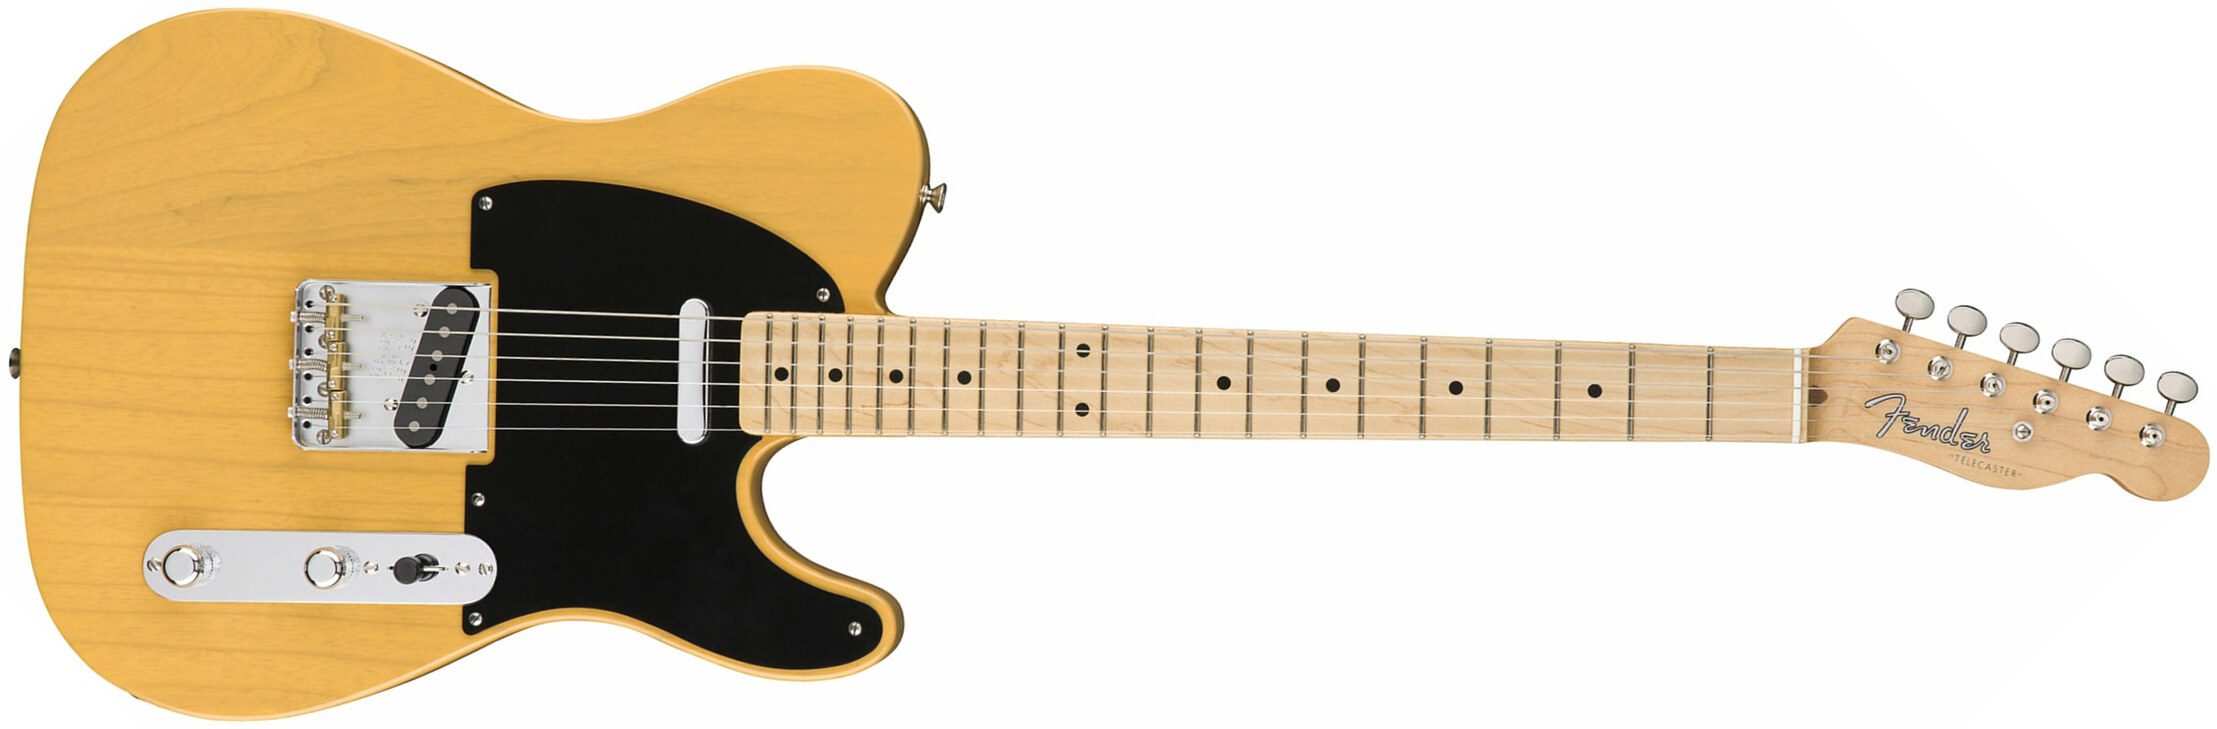 Fender Tele '50s American Original Usa Mn - Butterscotch Blonde - E-Gitarre in Teleform - Main picture